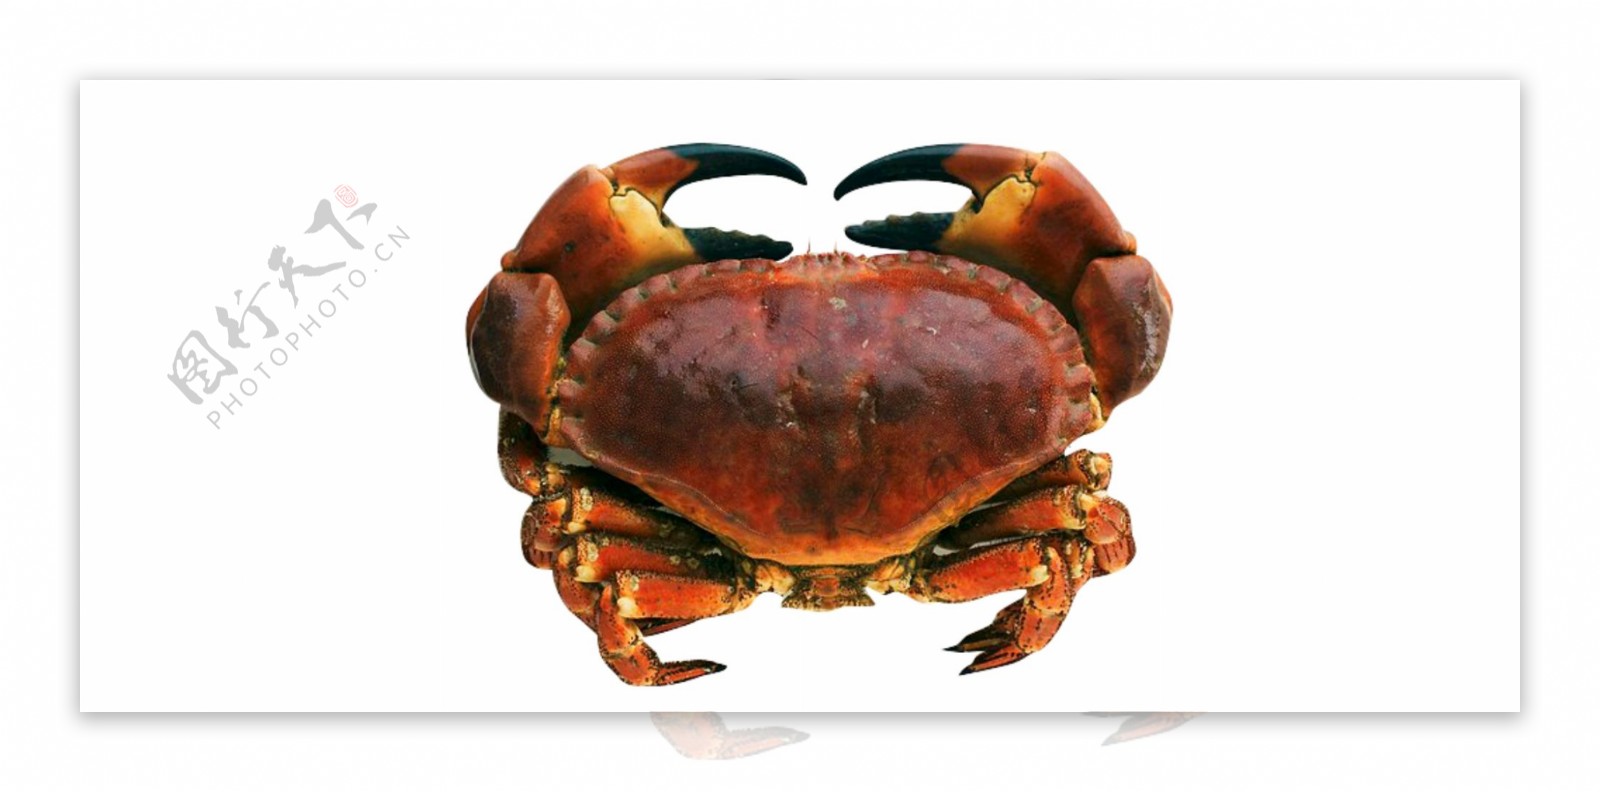 海鲜螃蟹动物美食素材餐饮食物